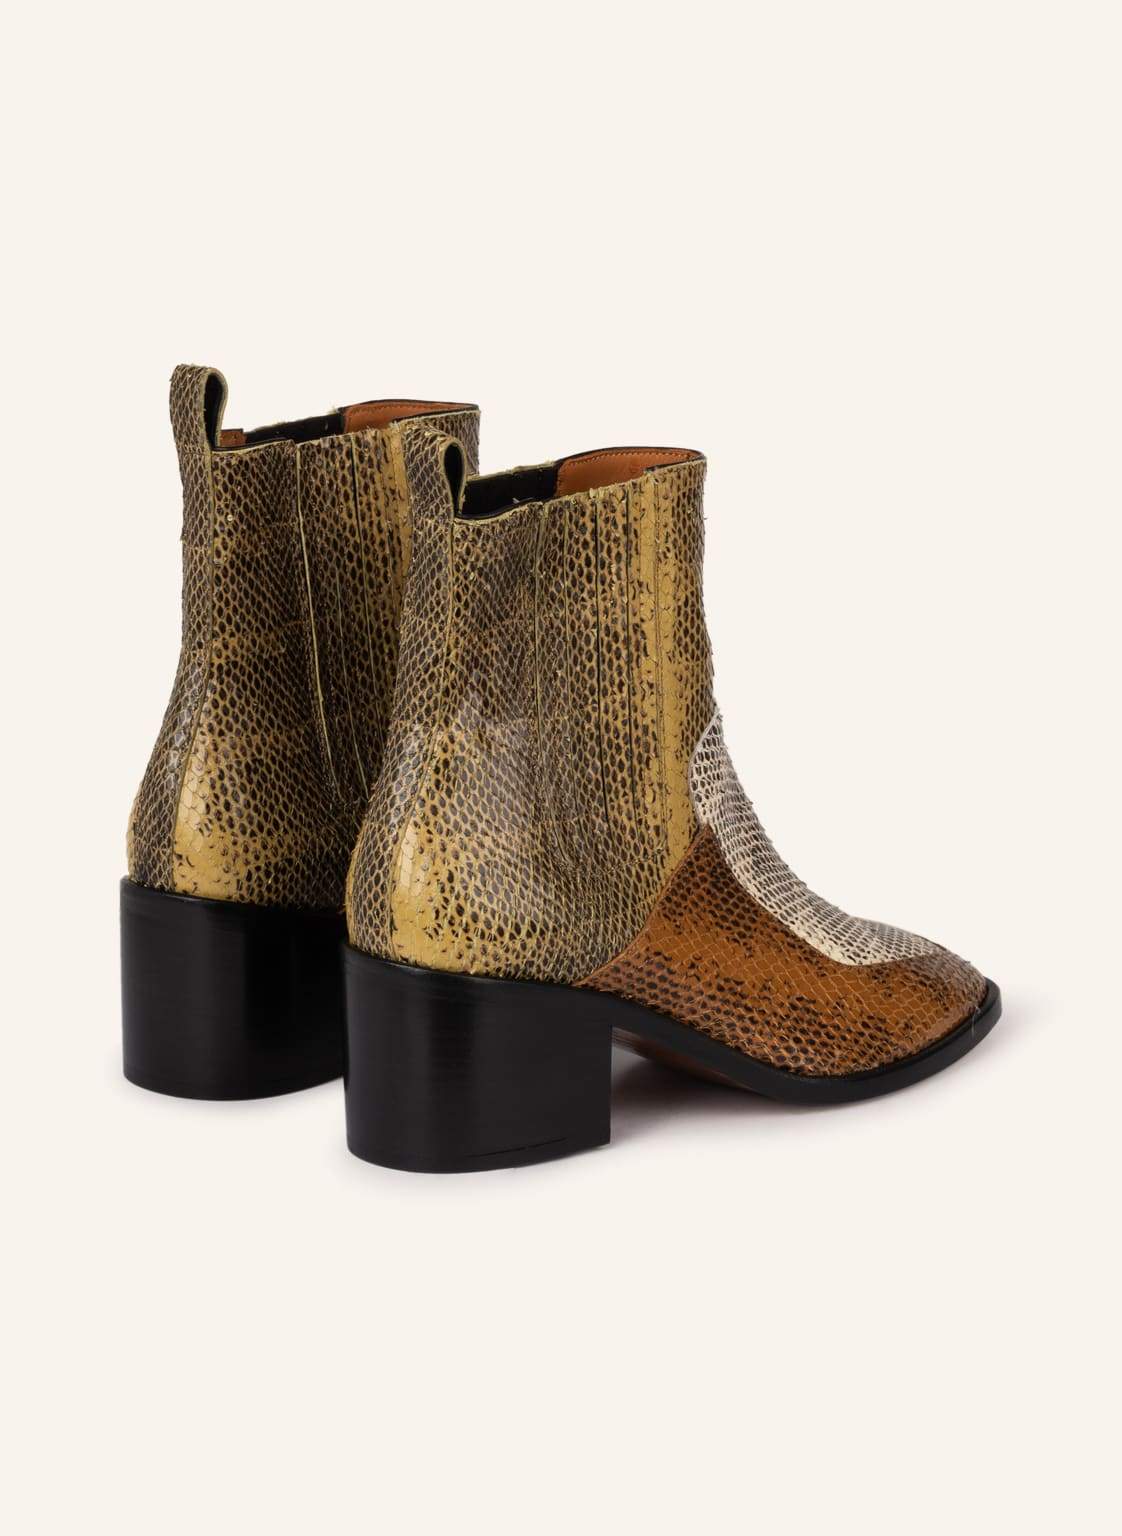 Tresorco Boots